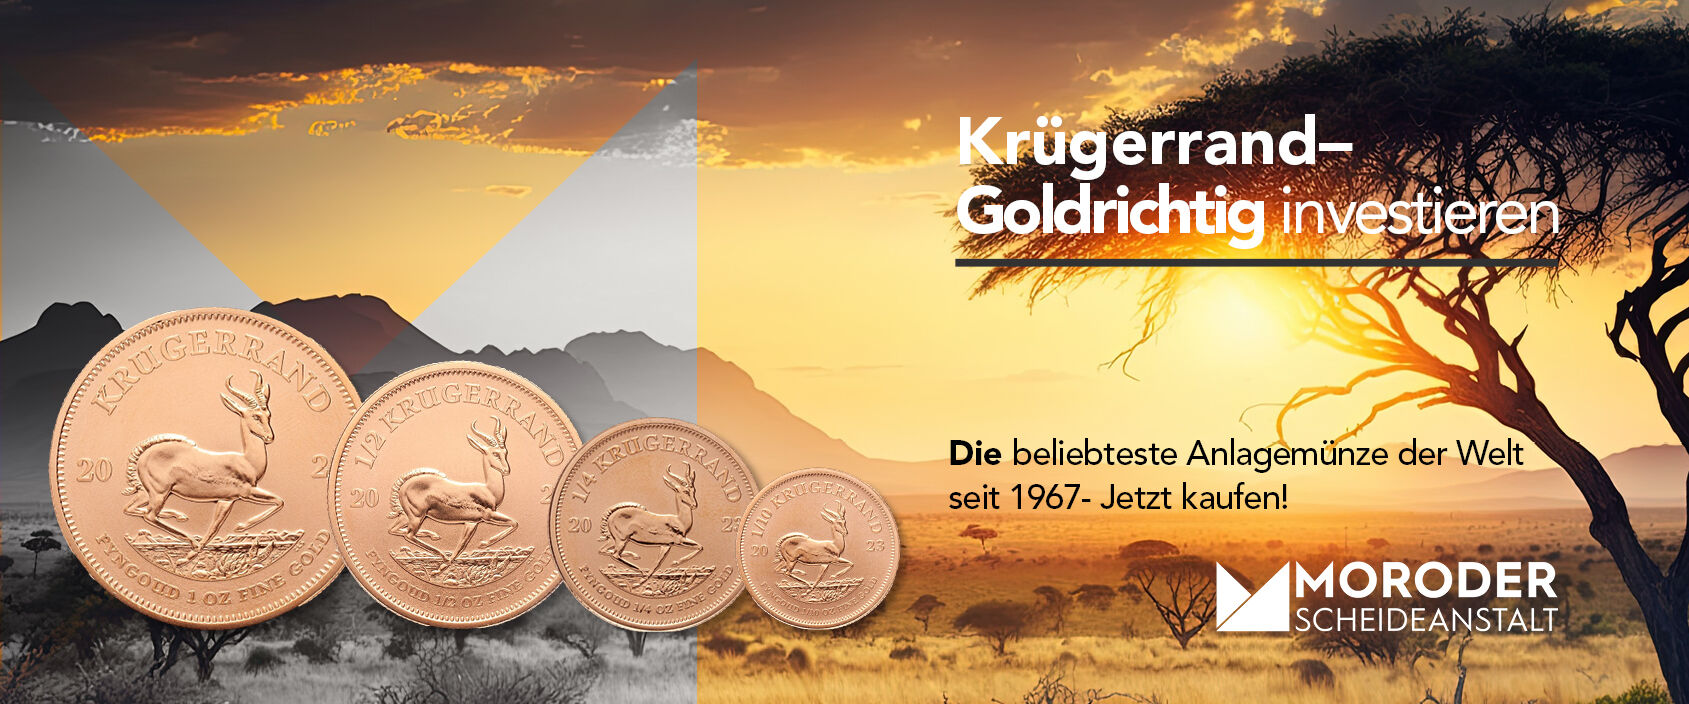 Krügerrand Goldmünzen sind bei Anlegern besonders beliebt und in verschiedenen Stückelungen verfügbar